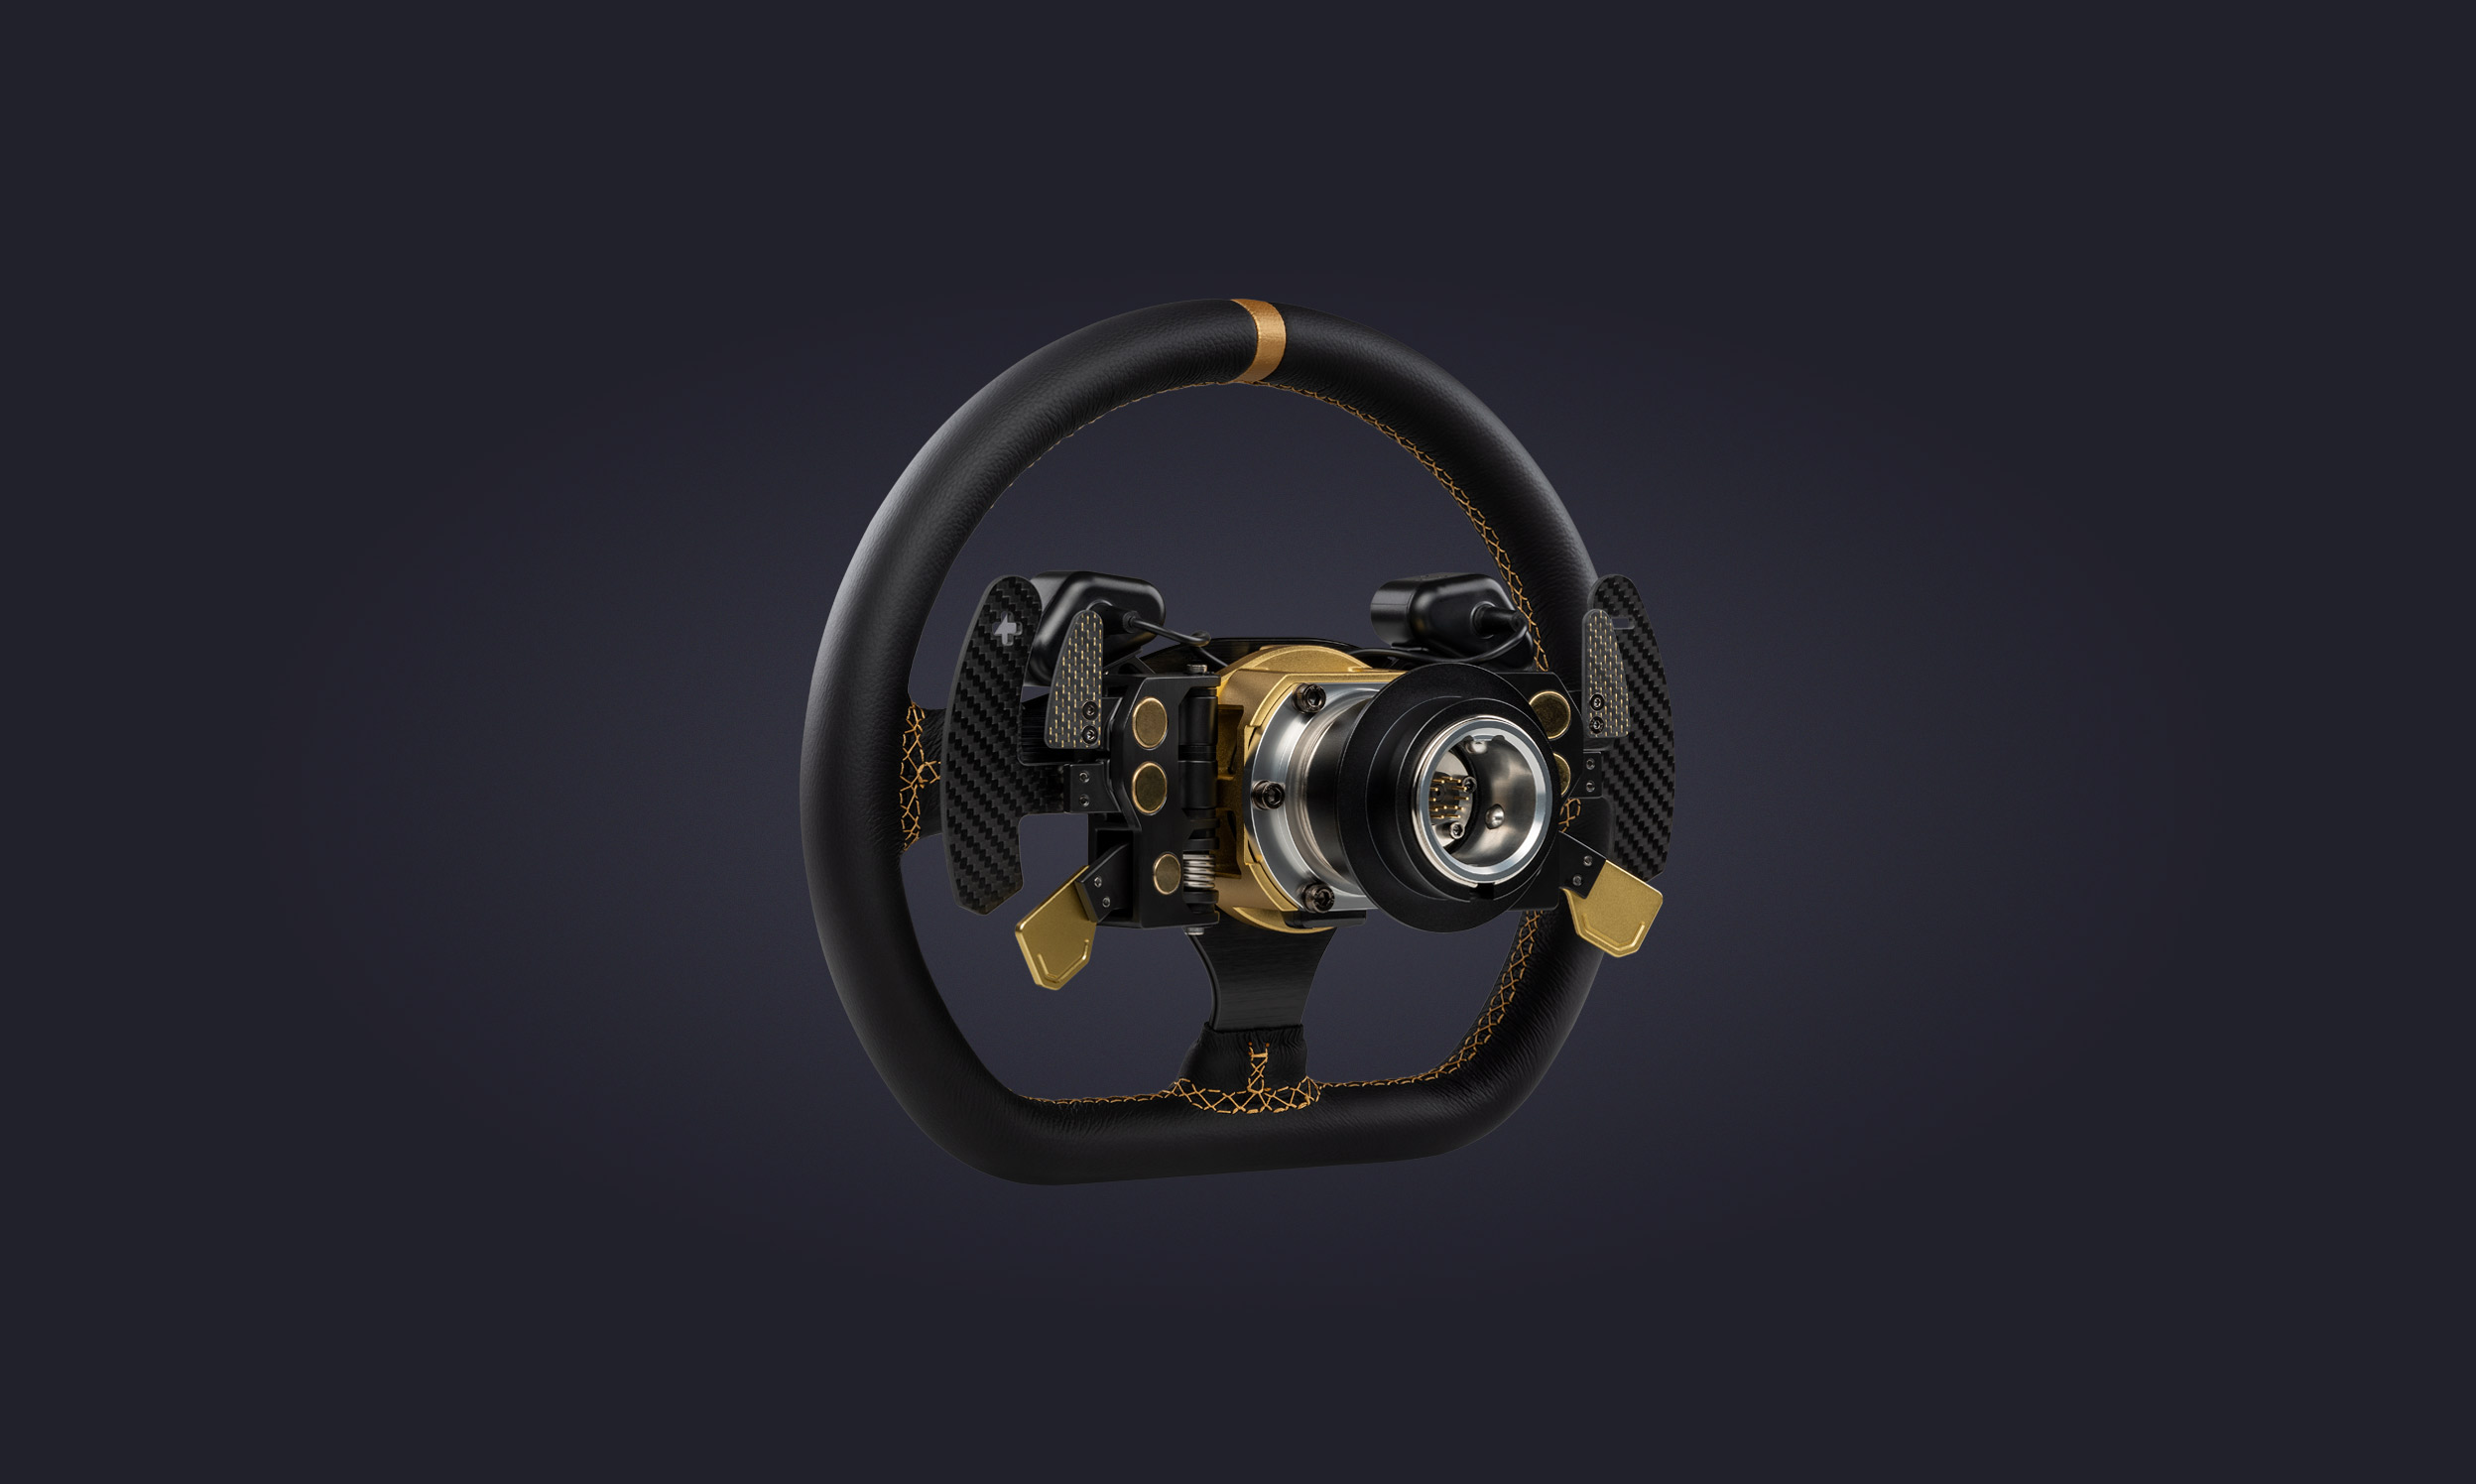 Podium Steering Wheel R300 | Fanatec